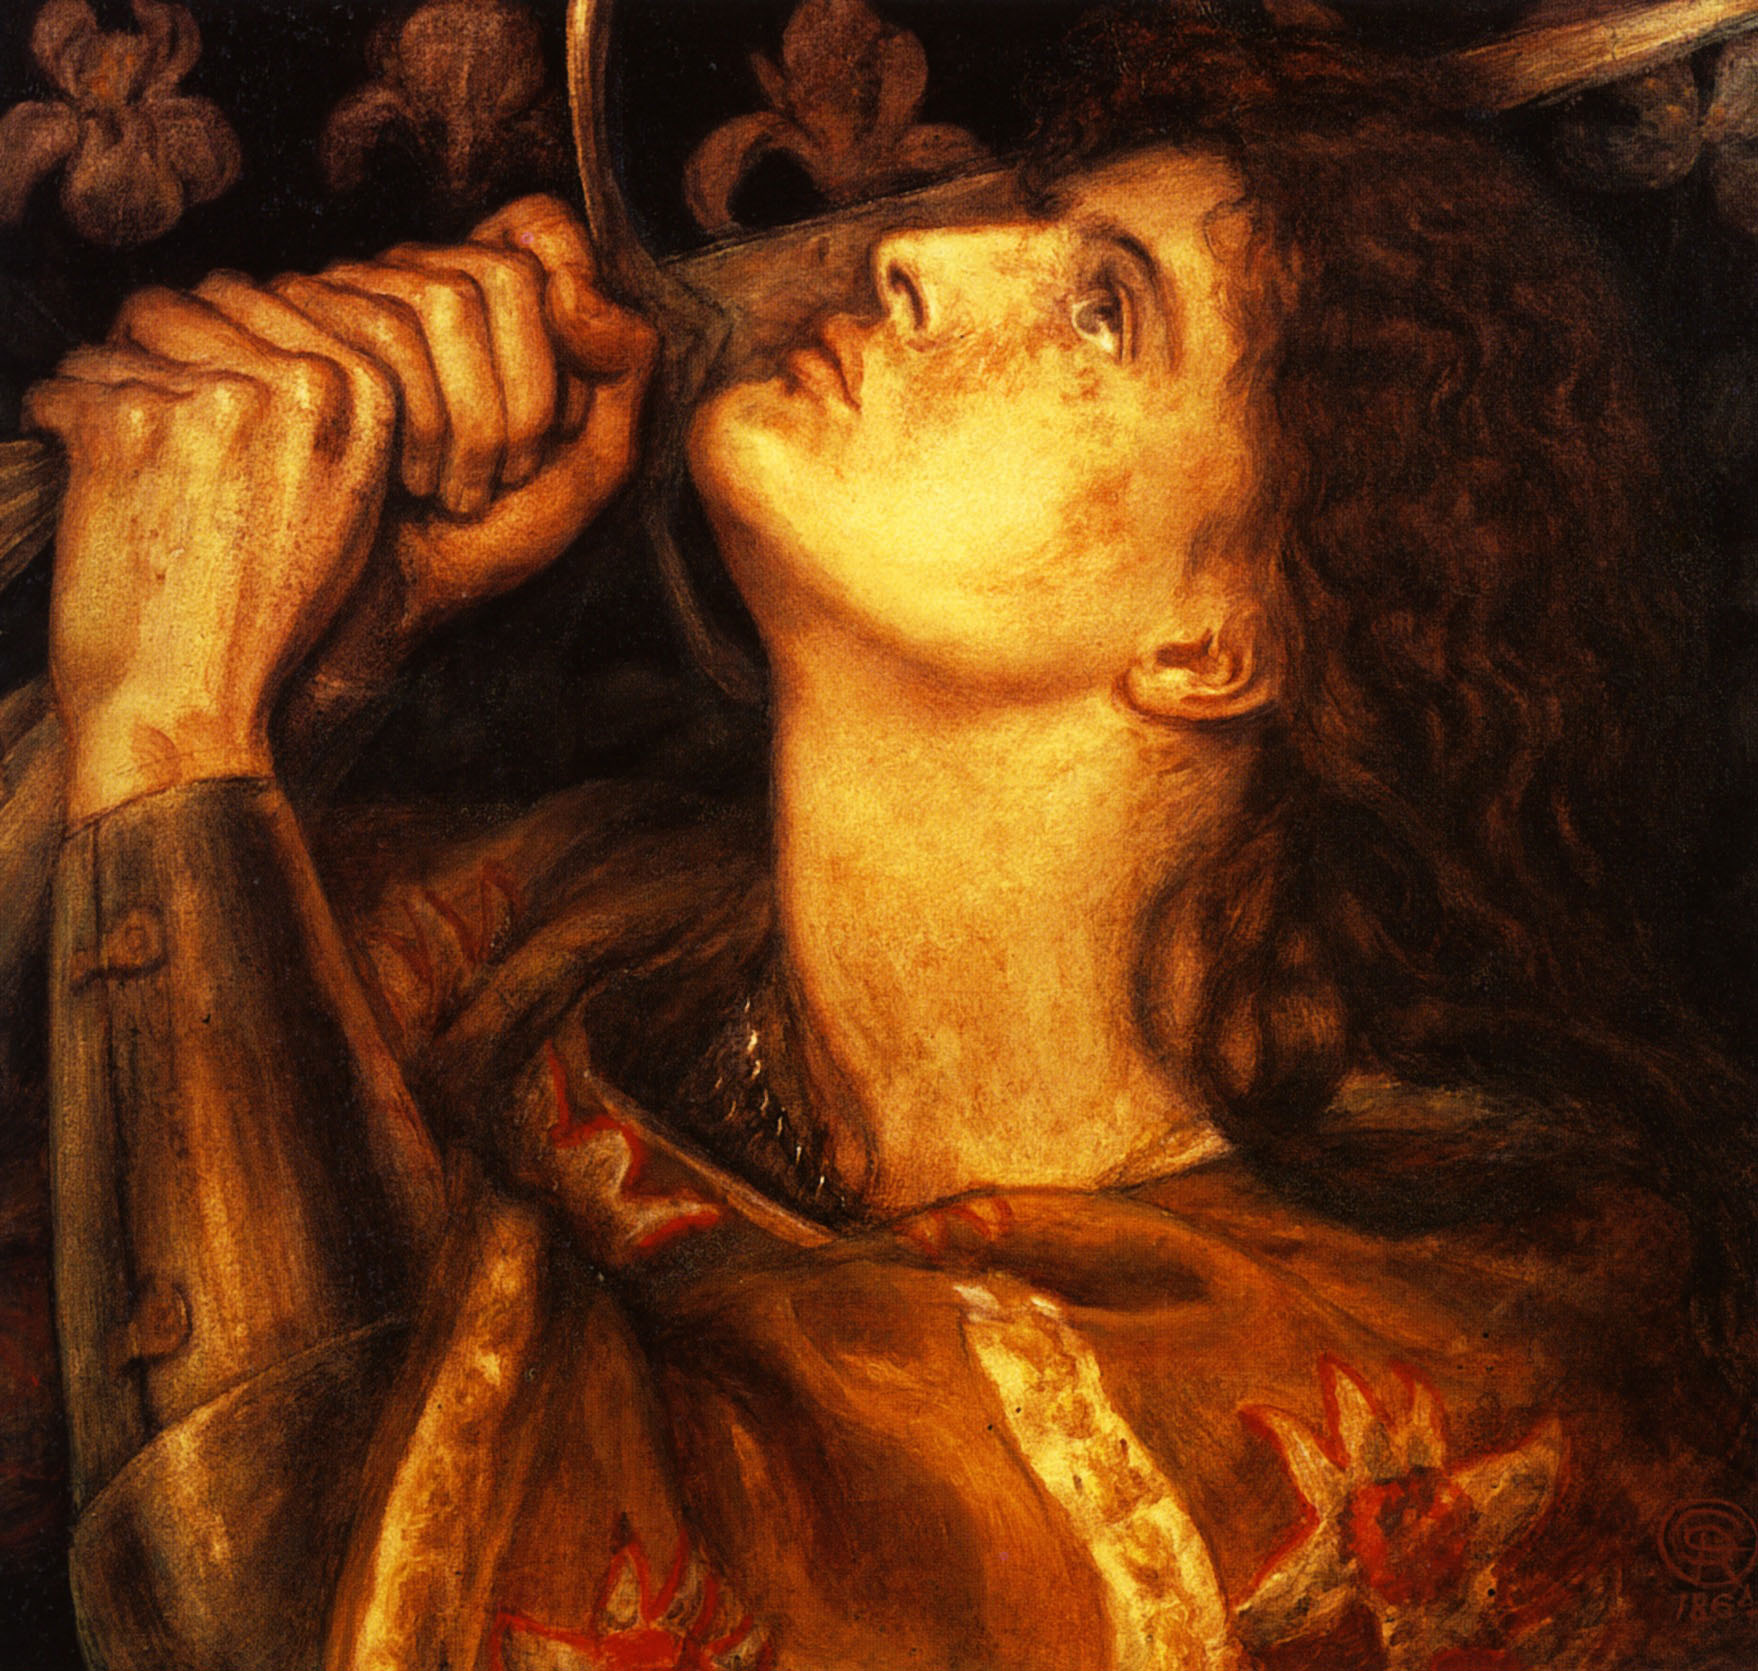 Данте Габриэль Россетти. "Жанна д'Арк". 1882. Галерея Тейт, Лондон.